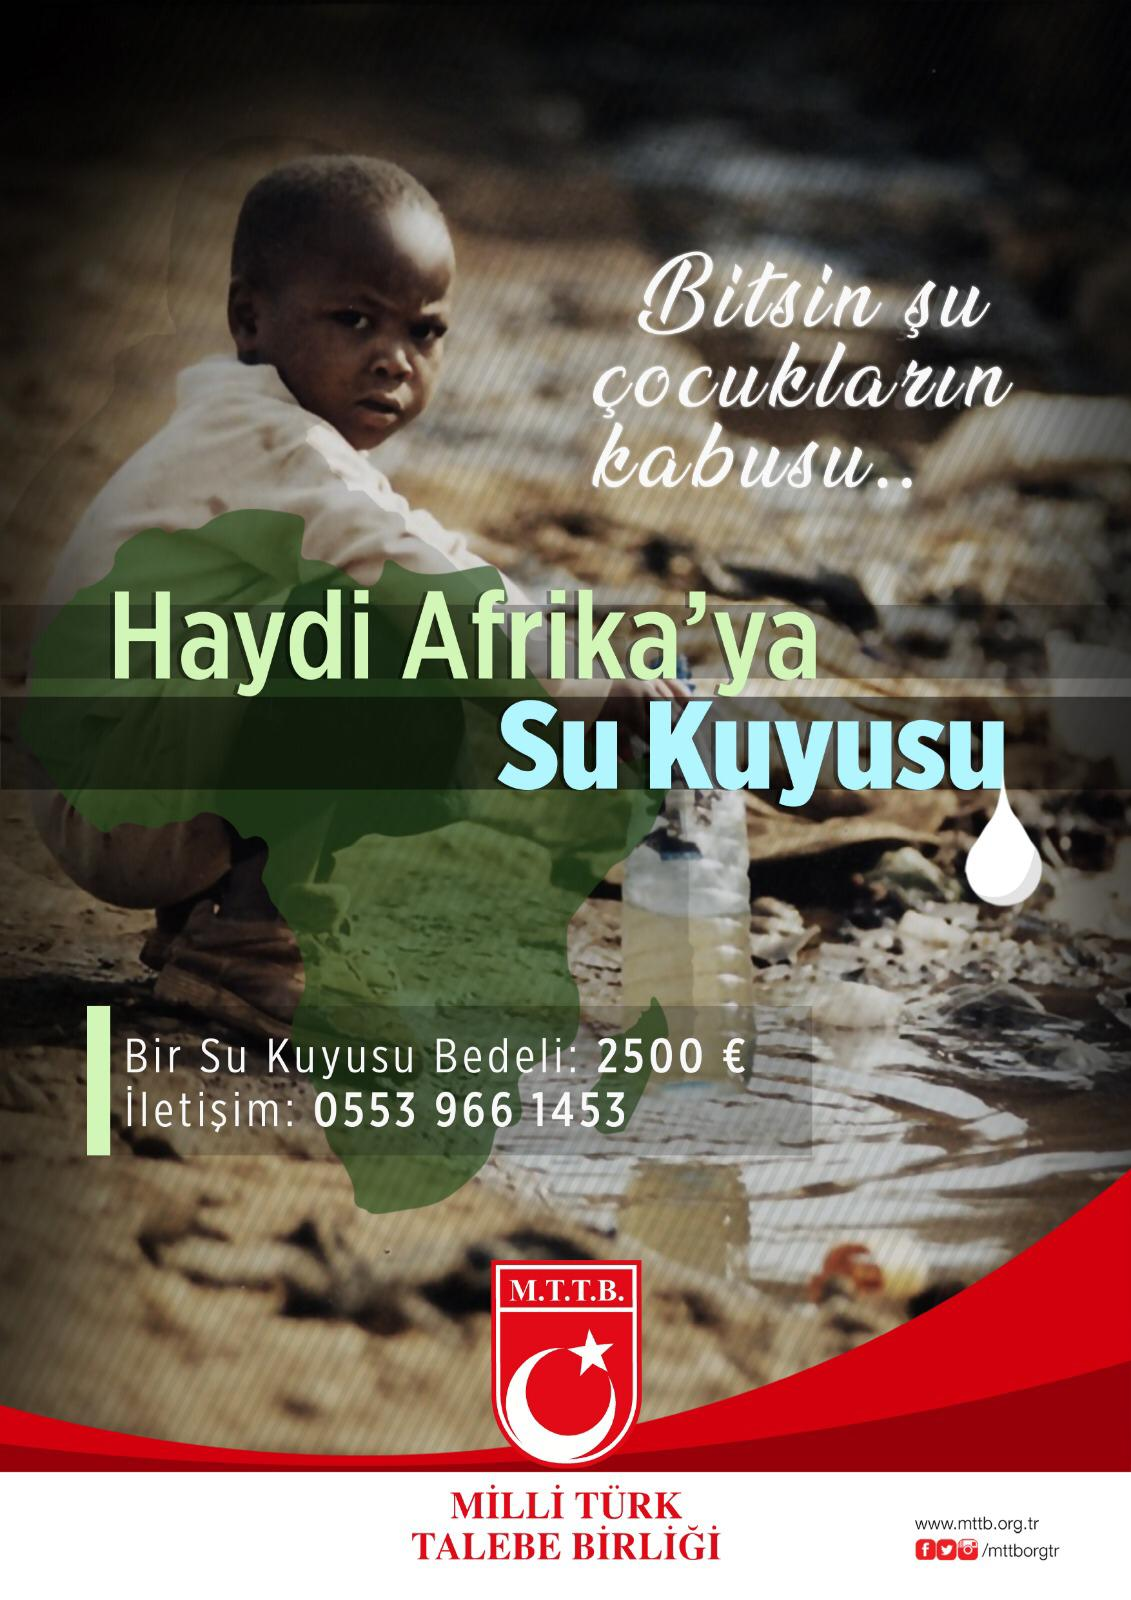 “Bitsin Artık Şu Çocukların Kabusu, Haydi Afrika’ya Su Kuyusu...”